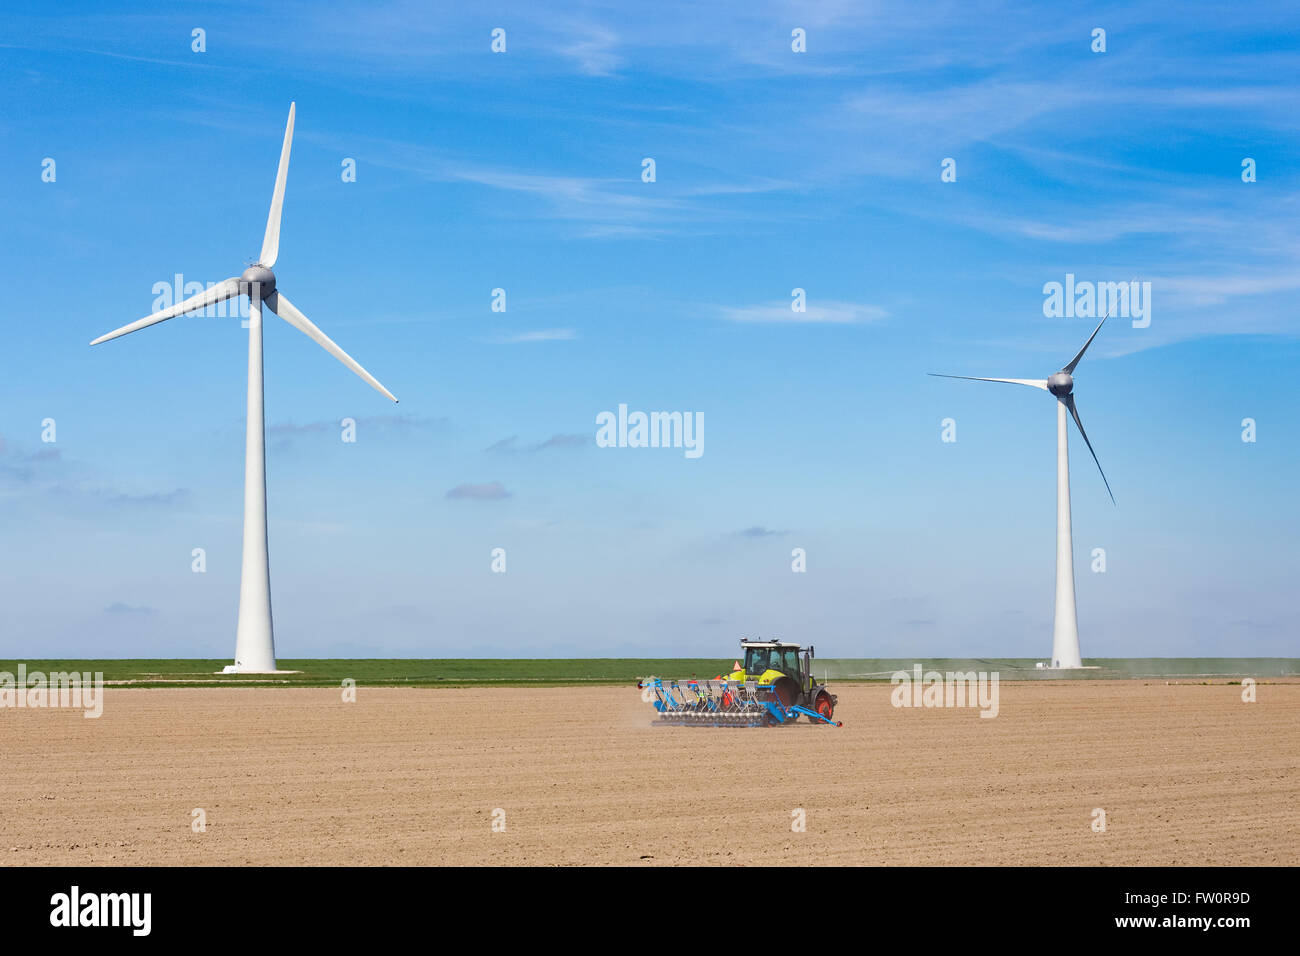 En el tractor, el agricultor siembra en el suelo cerca del dique y dos molinos de viento en los países bajos Foto de stock